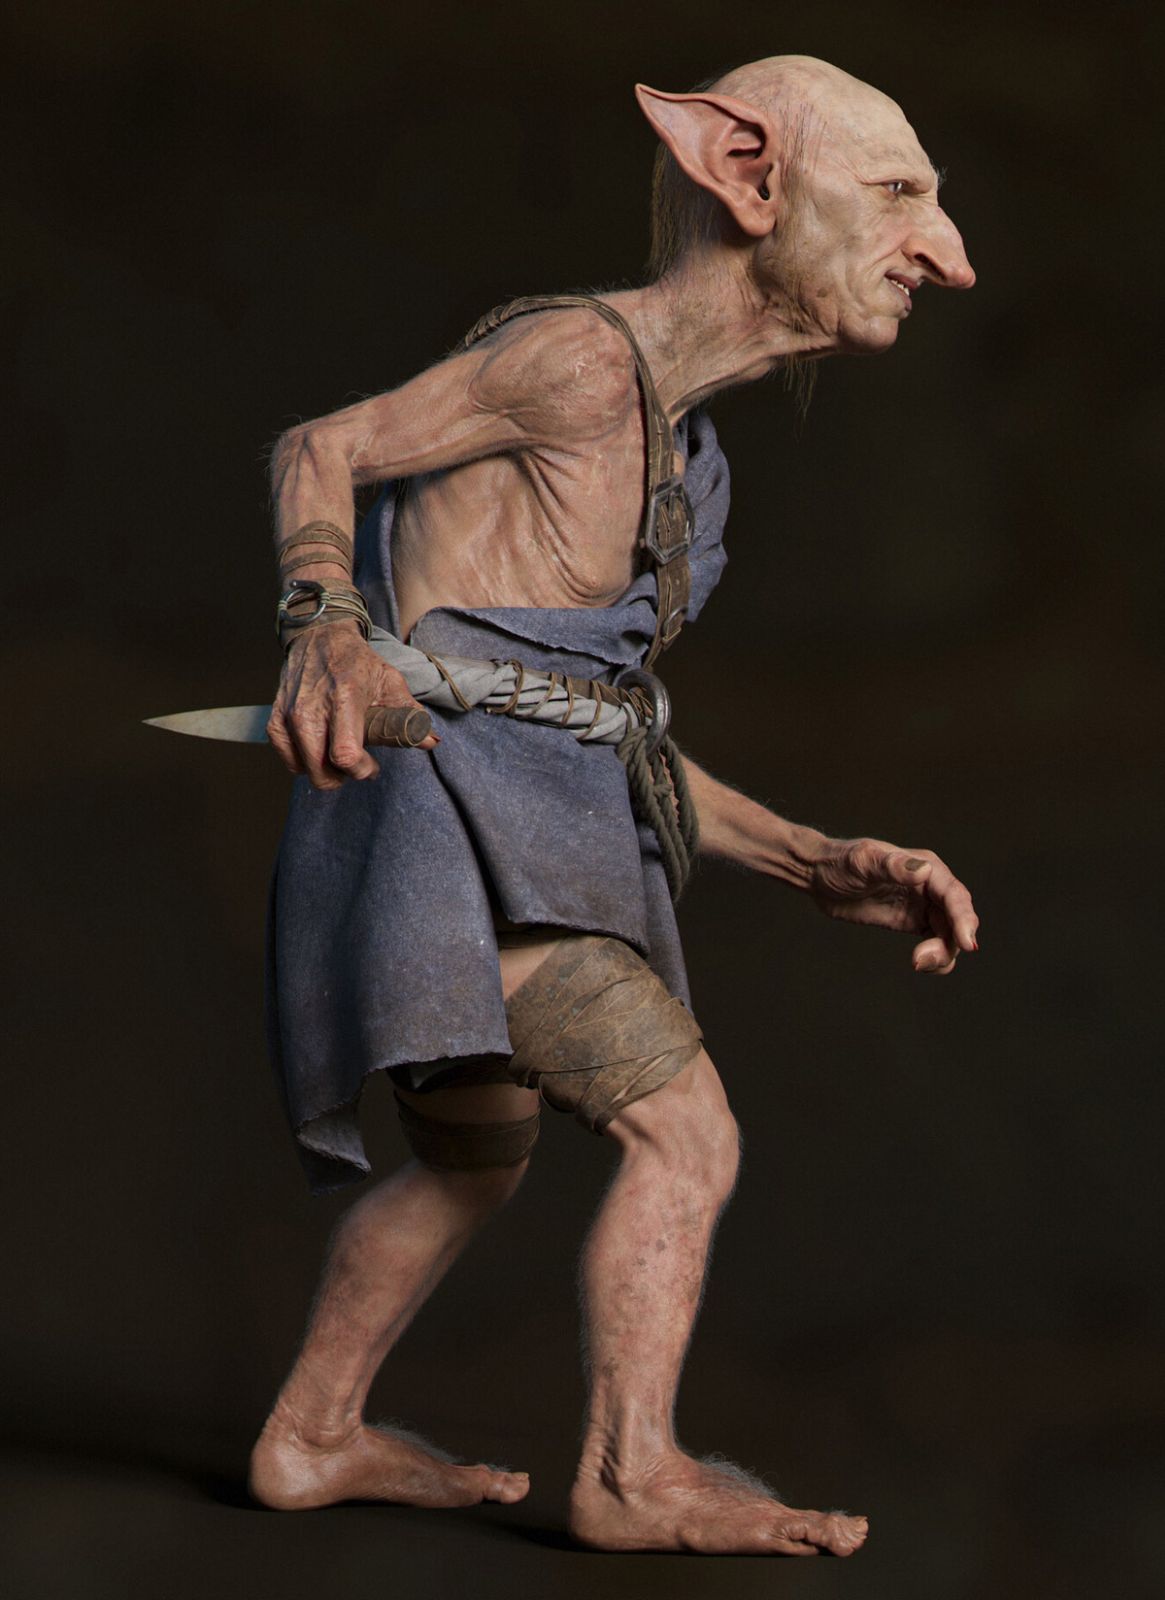 3d model blindside goblin alien by michaelrobson